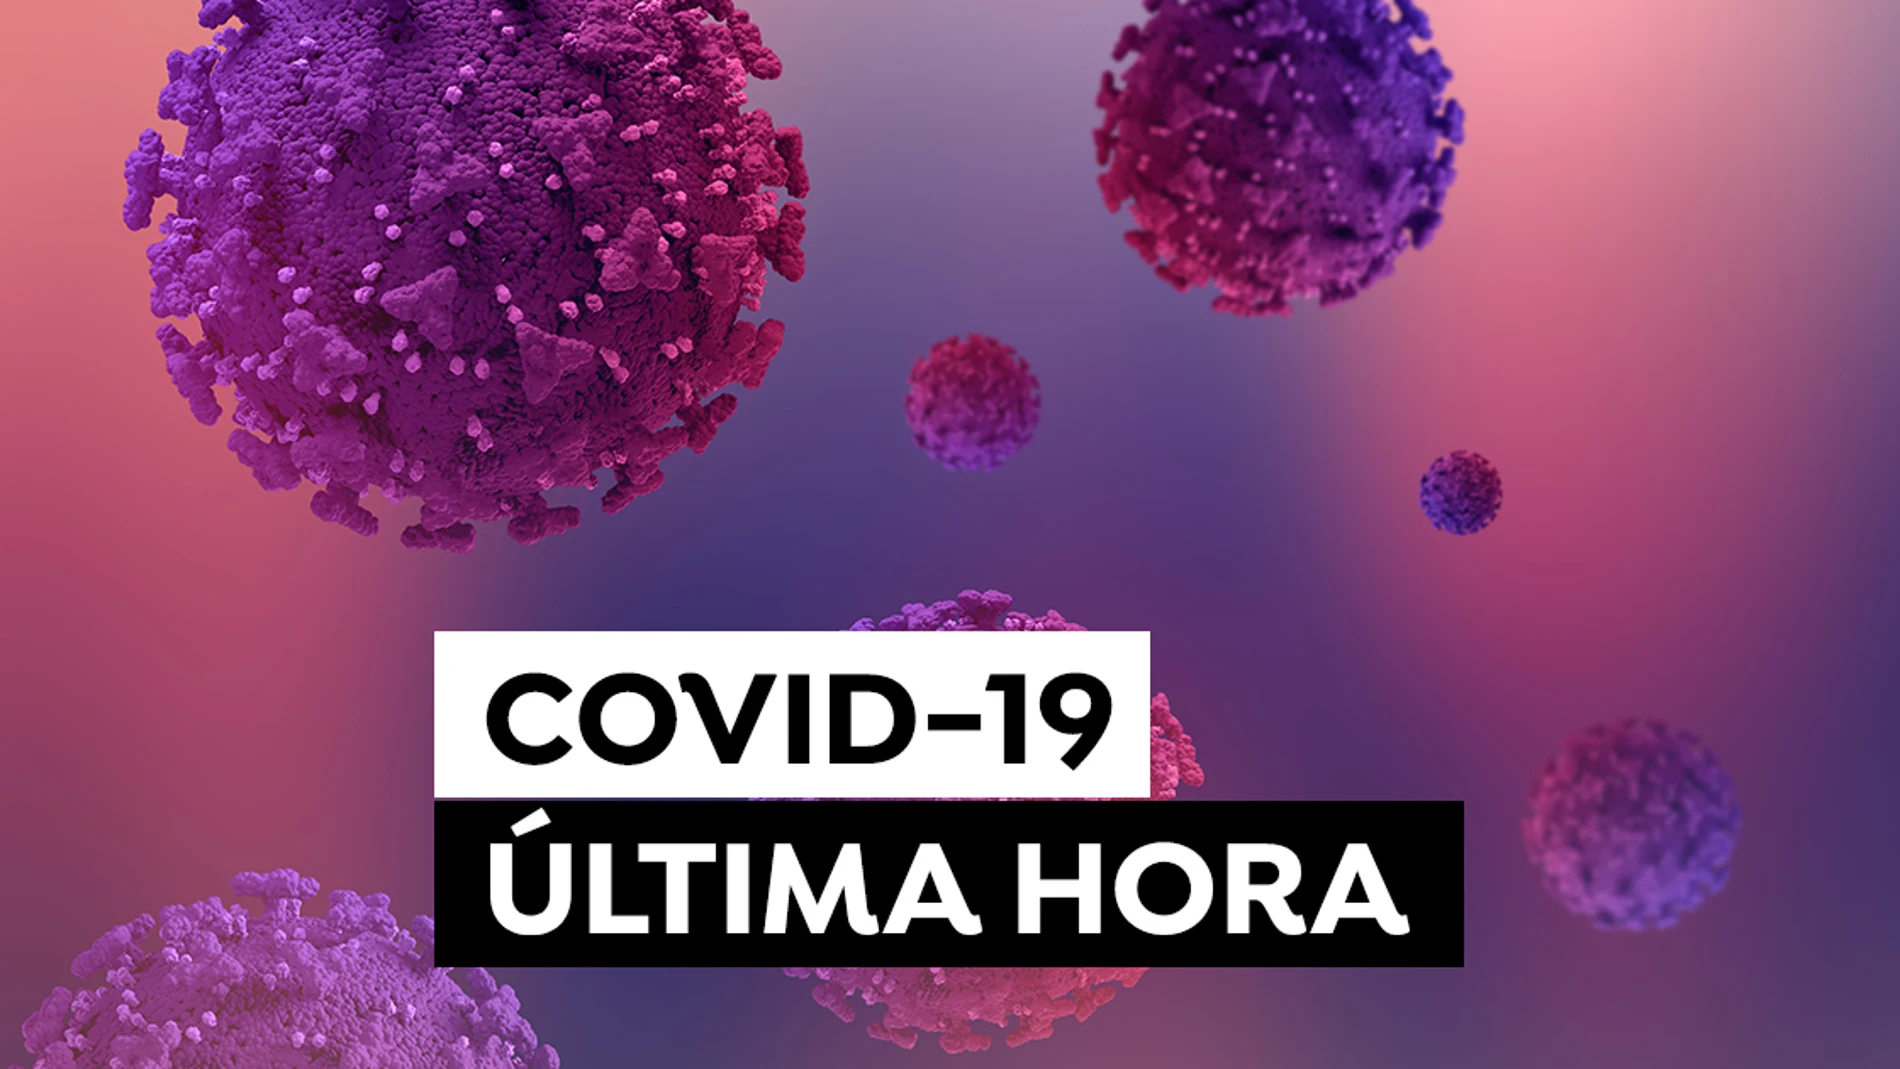 Coronavirus España: Última Hora de los contagios, incidencia acumulada y presión hospitalaria